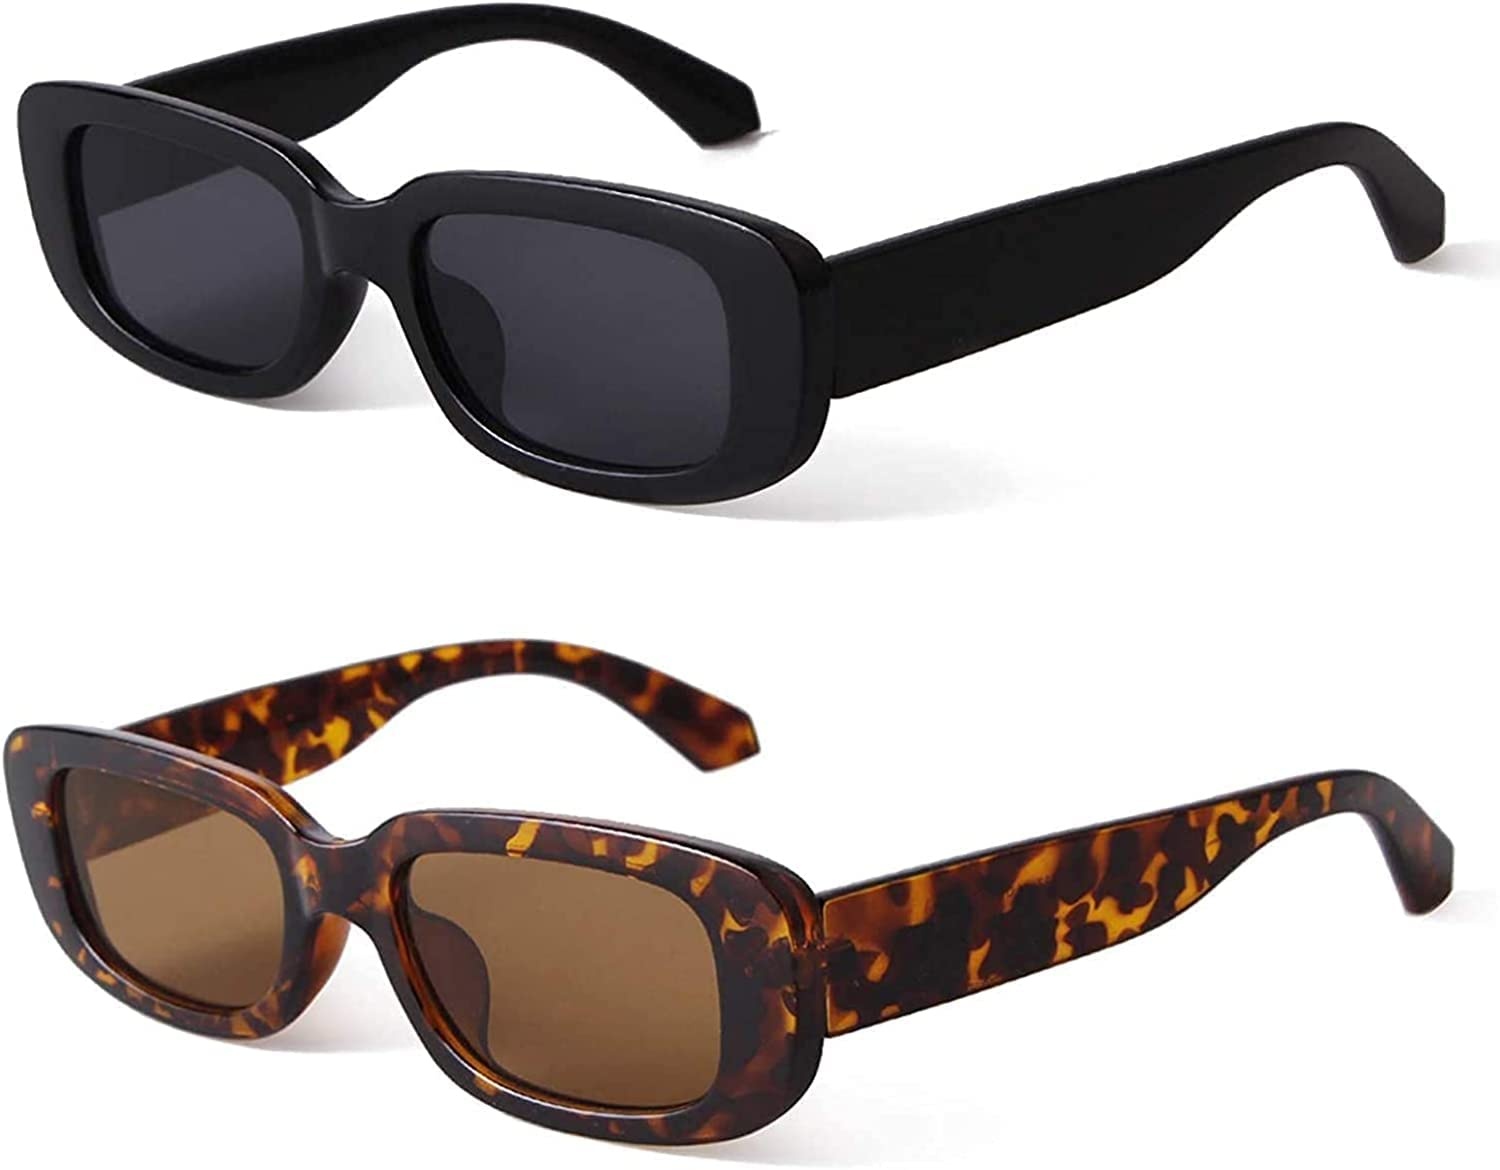 2 Stück Sonnenbrille Damen Vintage, Retro Sonnenbrillen Vintage Rechteckige Sonnenbrille, Sunglasses Woman Man, Quadrat Sonnenbrille für Damen und Männer,Sonnenbrille Herren Verspiegelt UV400-Schutz - 1